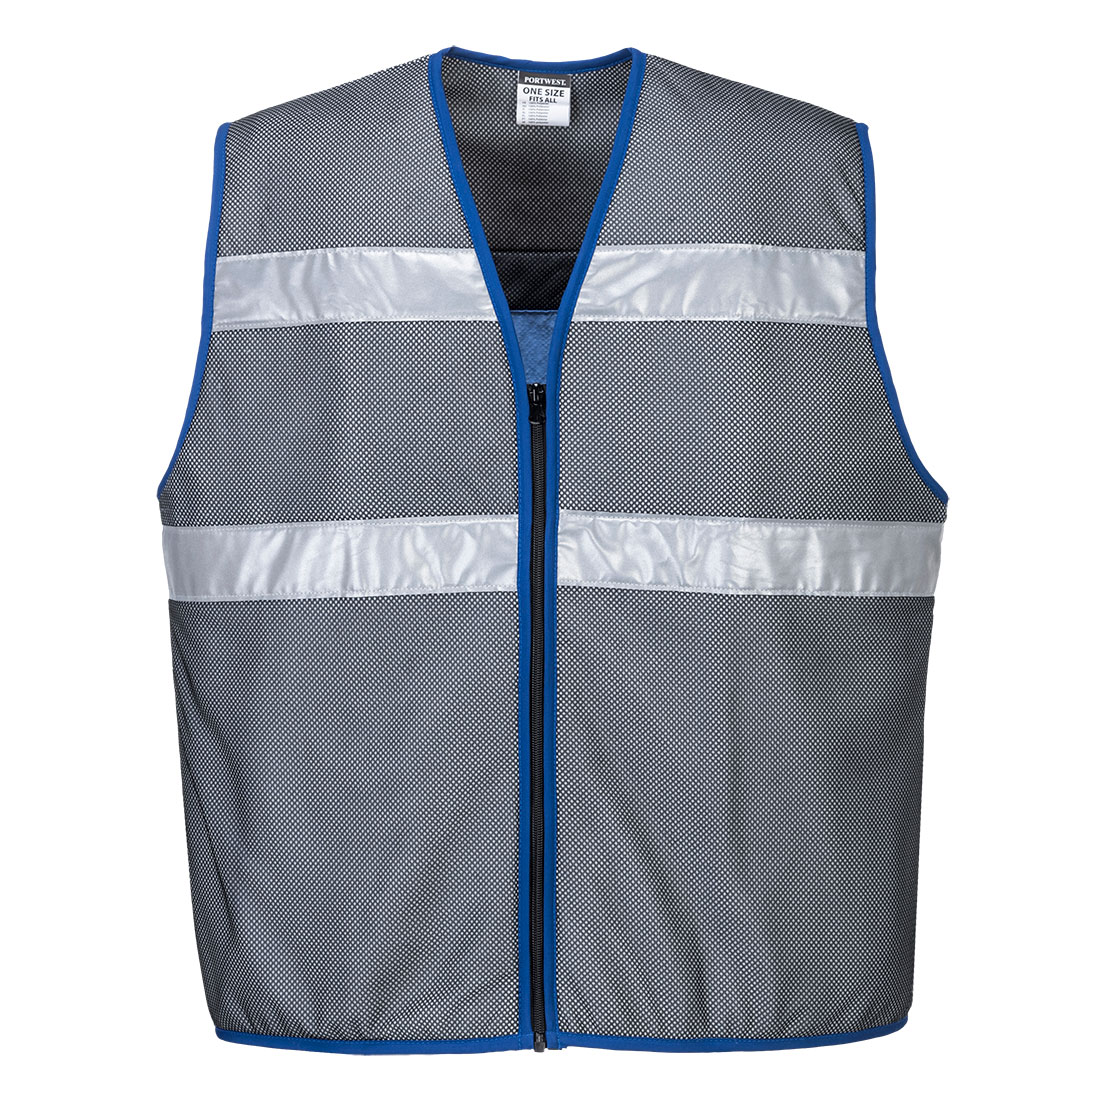 CV02 Portwest® UV Blocking Retro-Reflective Cooling Vests